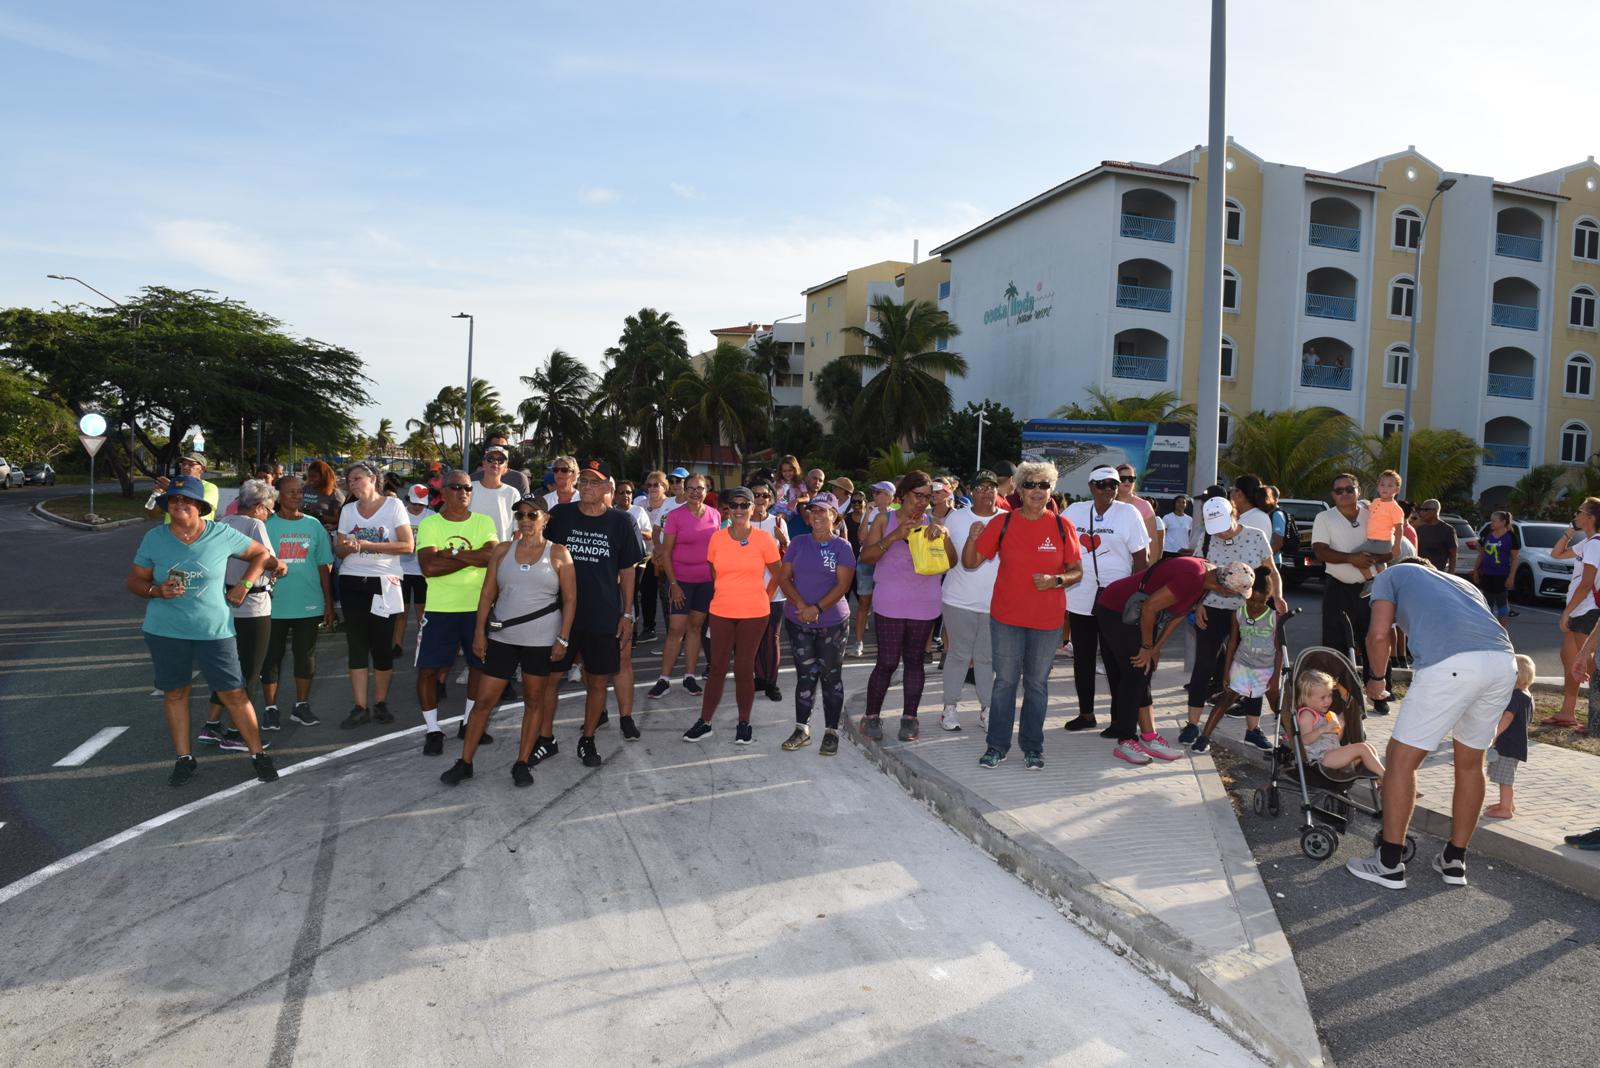 Prome edicion di “5 KM Beach Boardwalk” di Aruba Heart Foundation hopi exitoso